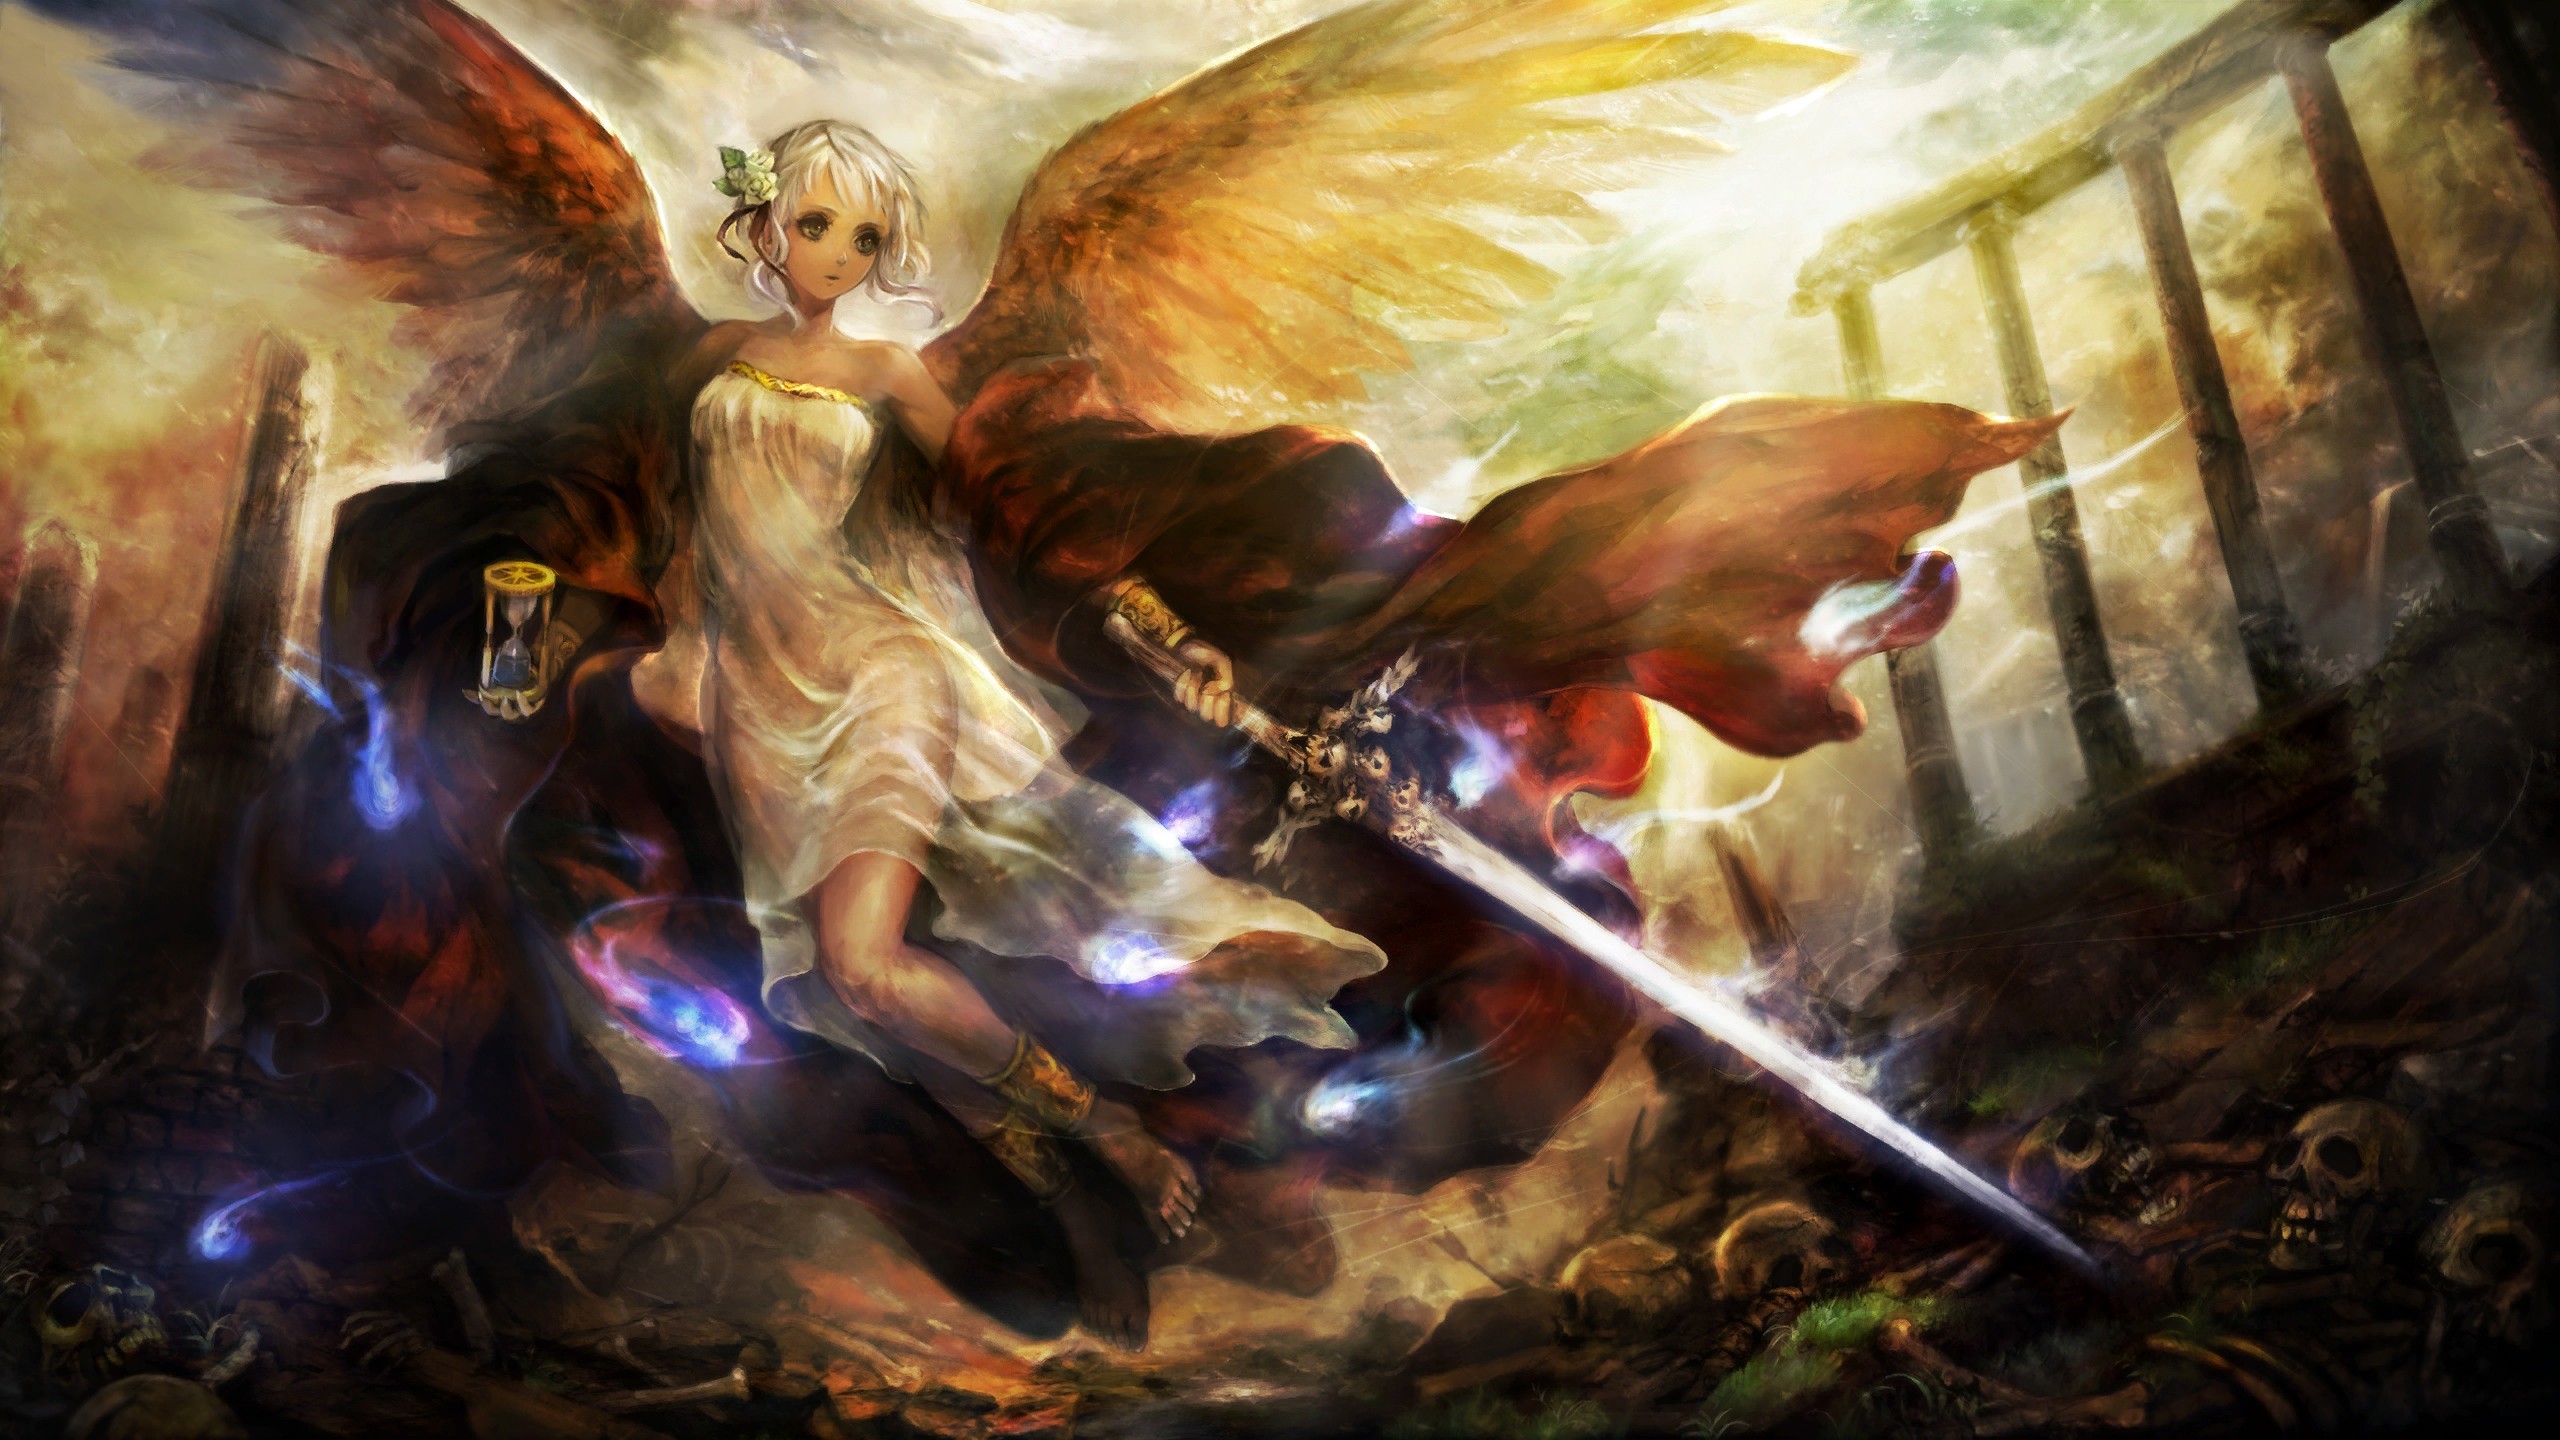 Anime 2560x1440 angel artwork fantasy girl fantasy art sword anime girls anime women with swords wings hourglasses weapon